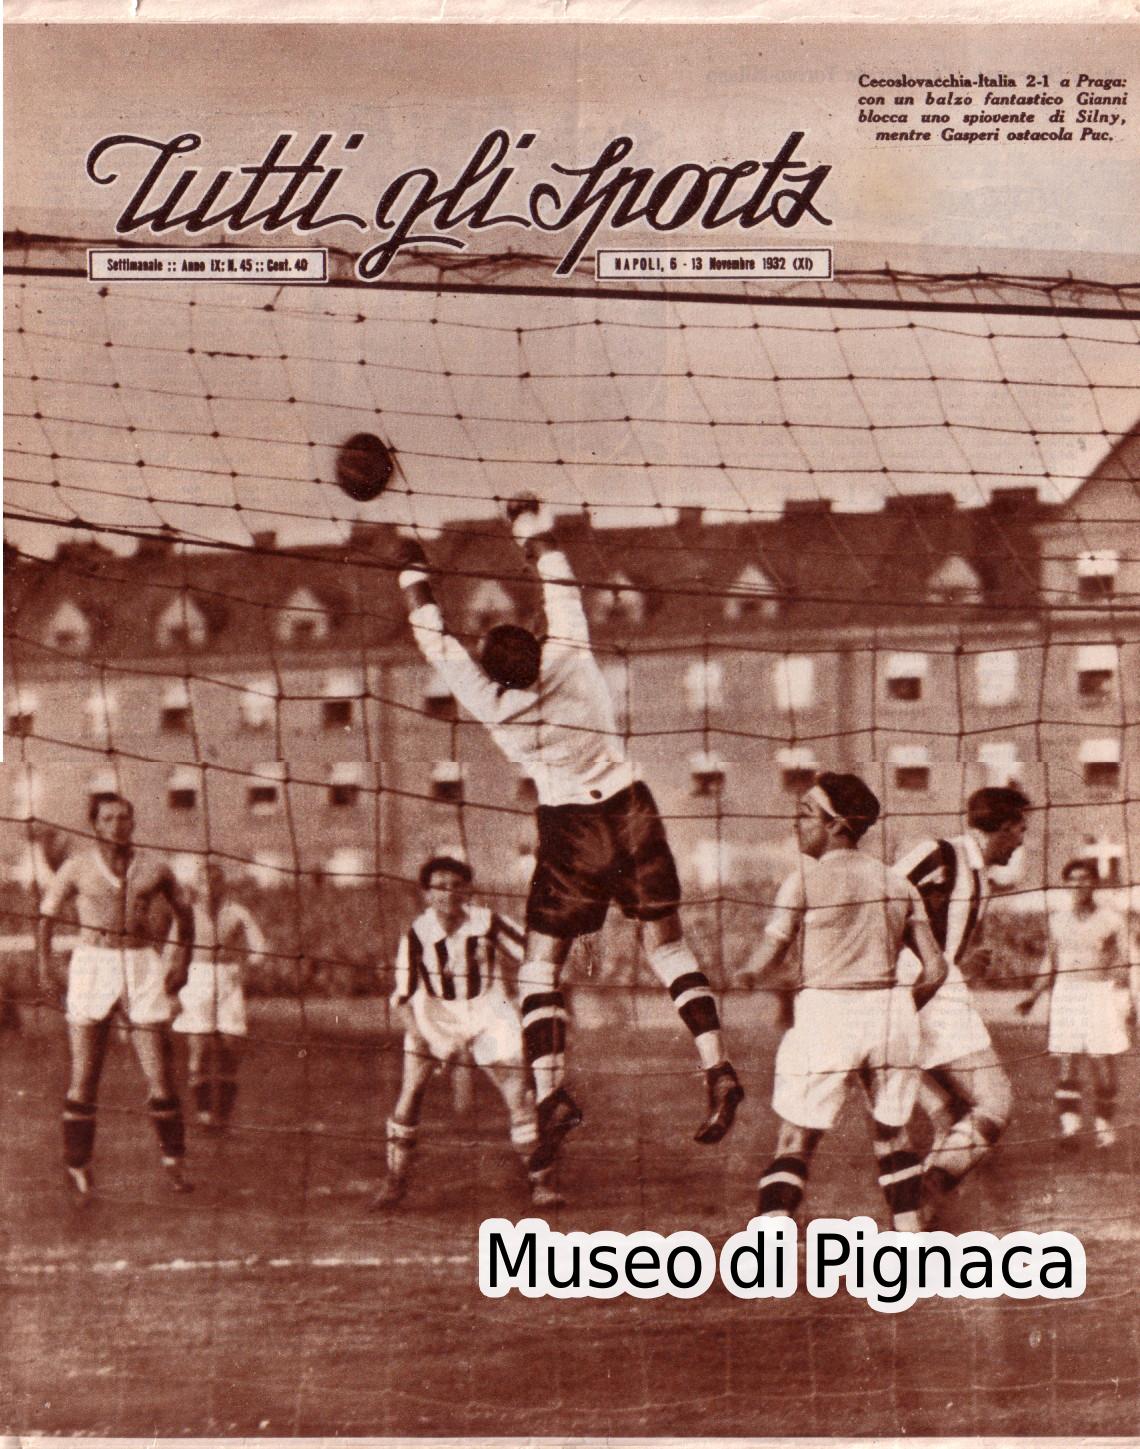 1932 ottobre - TUTTI GLI SPORTS - Gianni e Gasperi in azione con la Nazionale